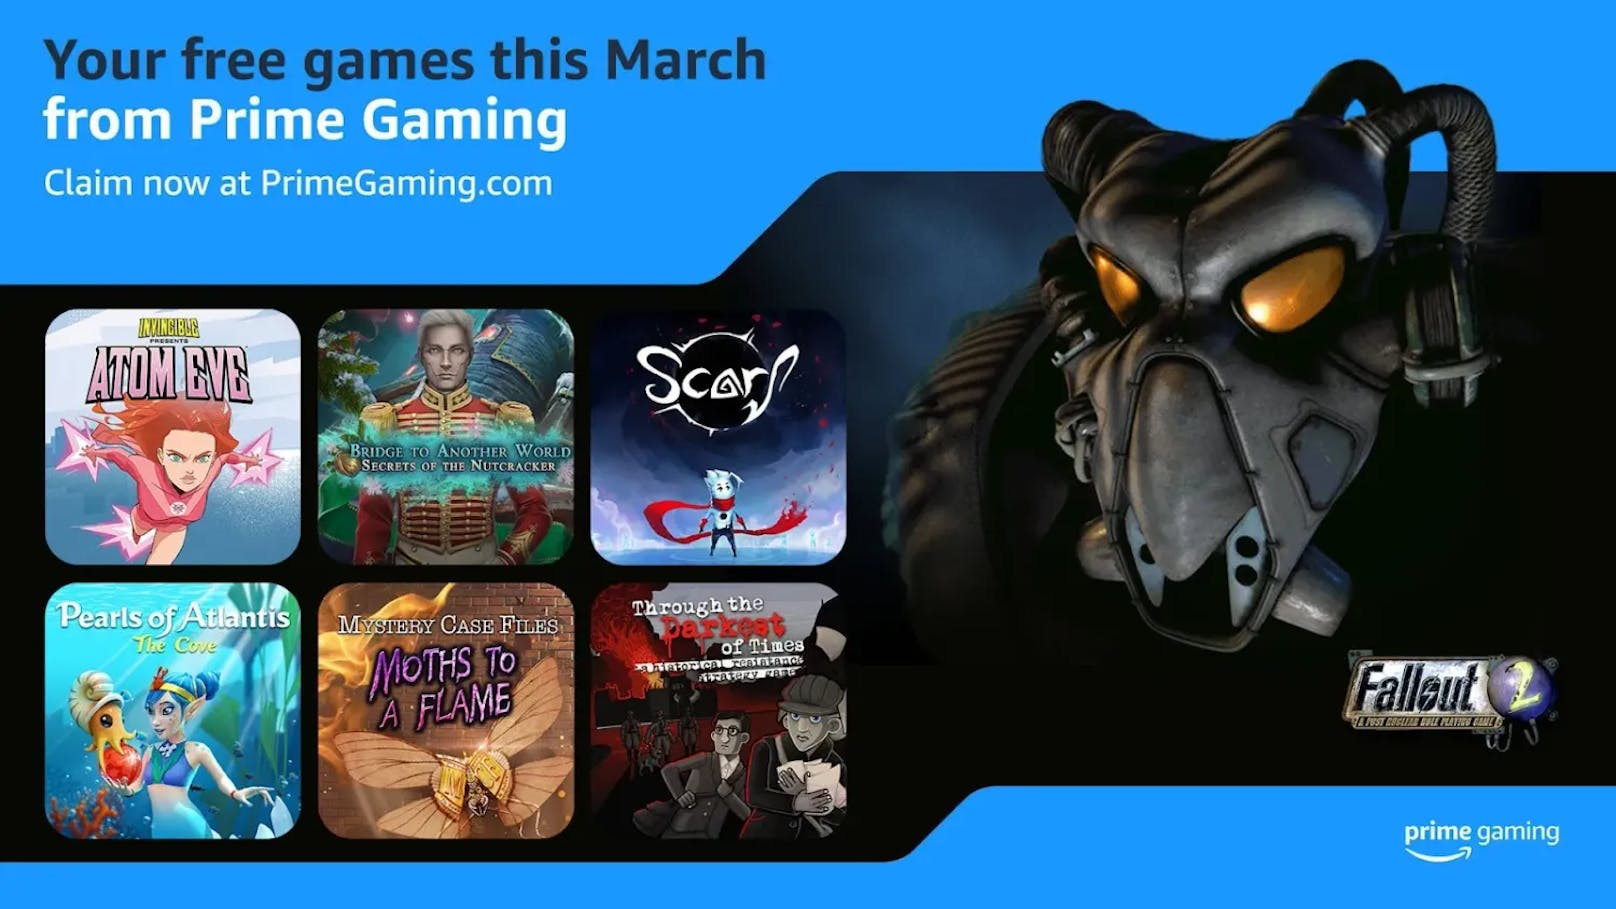 Willkommen zum Inhaltsupdate für Prime Gaming im März! 